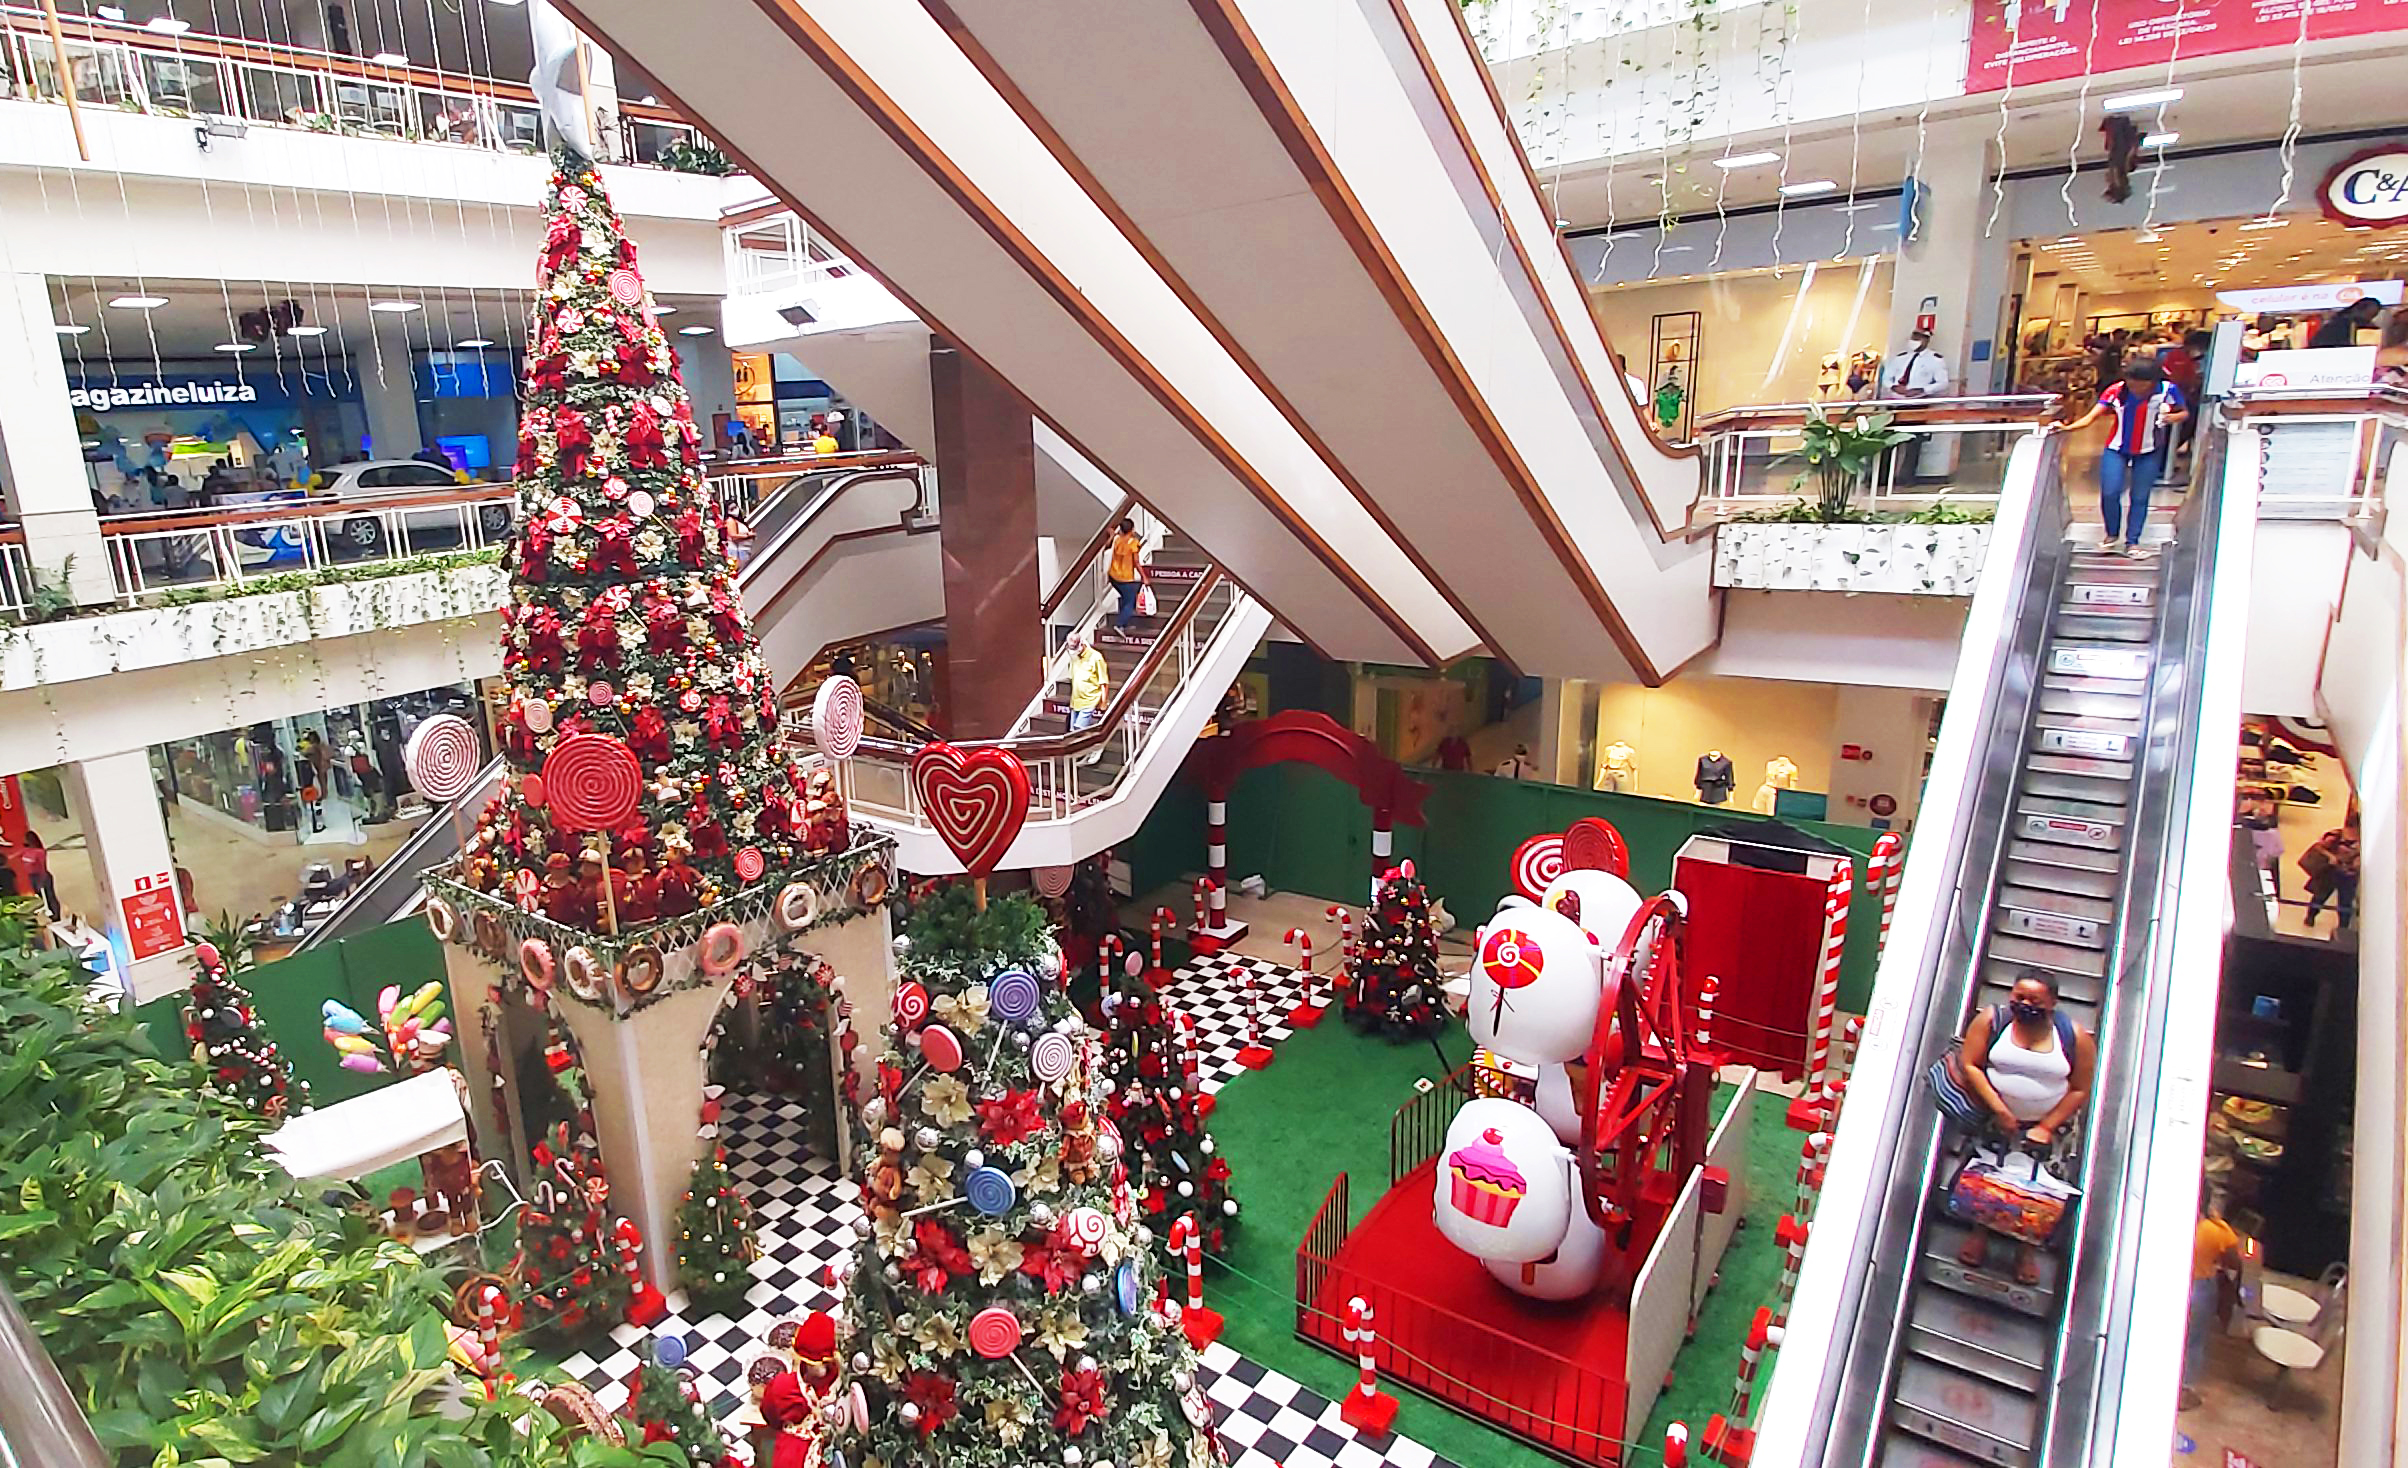 Decoração "Doce Natal" do Shopping Piedade